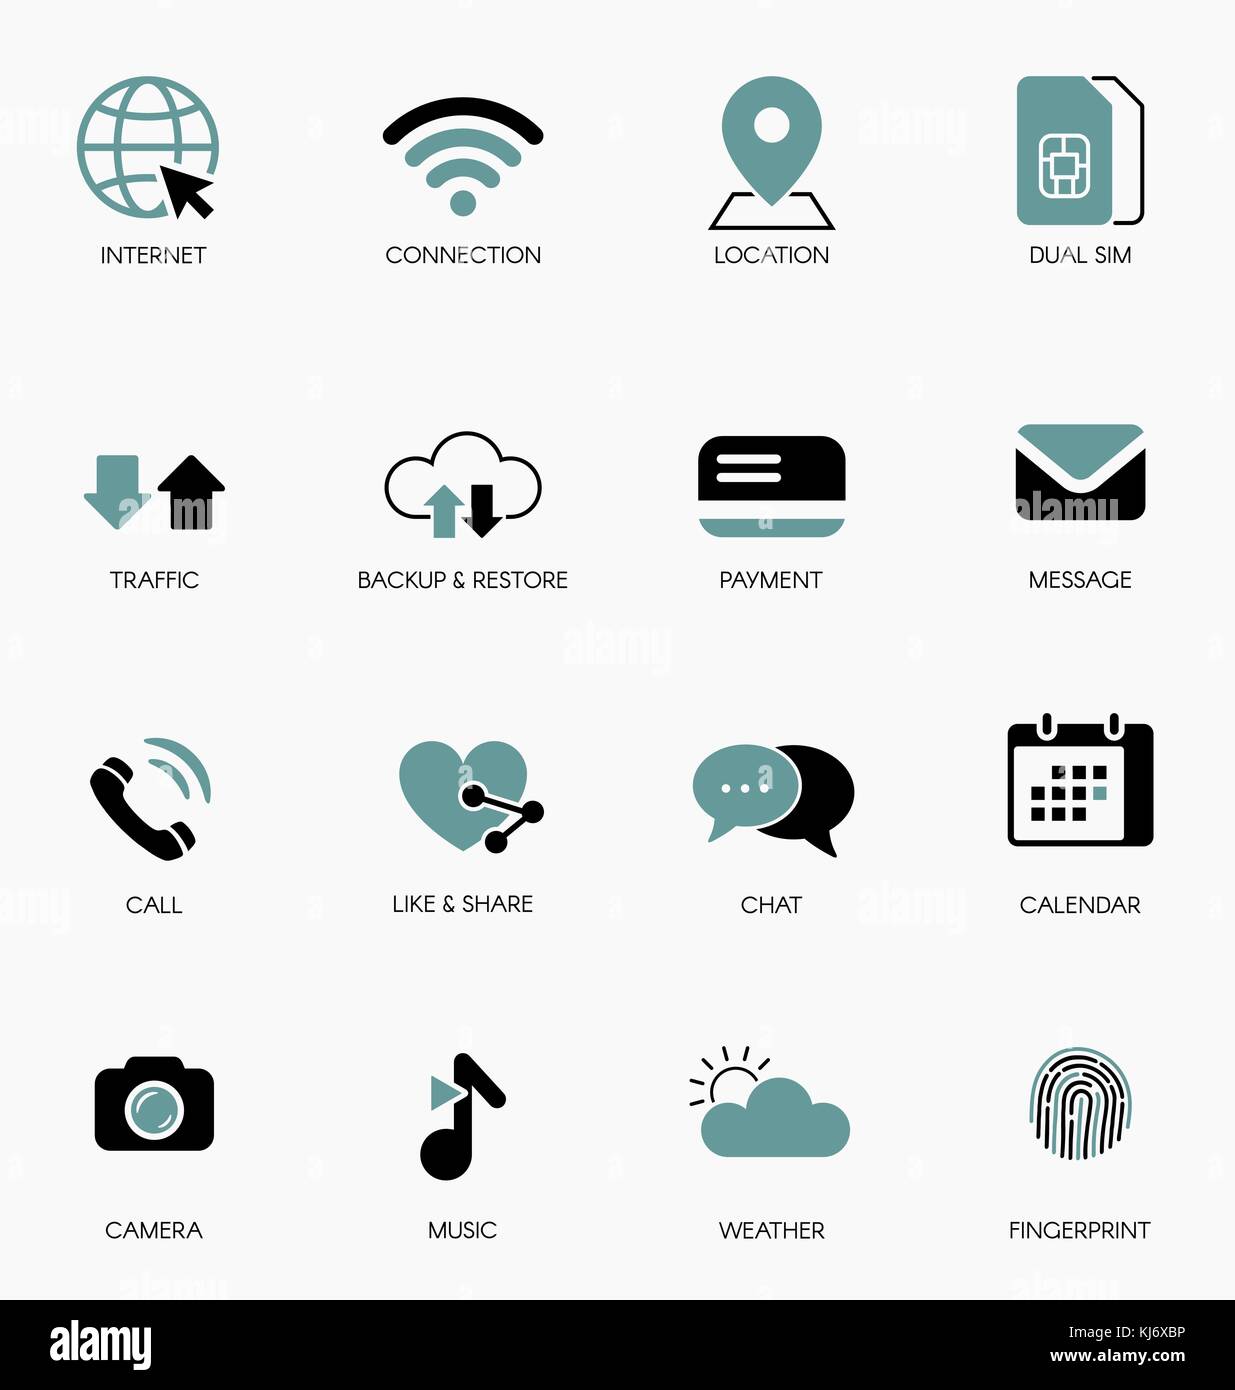 La technologie mobile vector icons set. Illustration de Vecteur